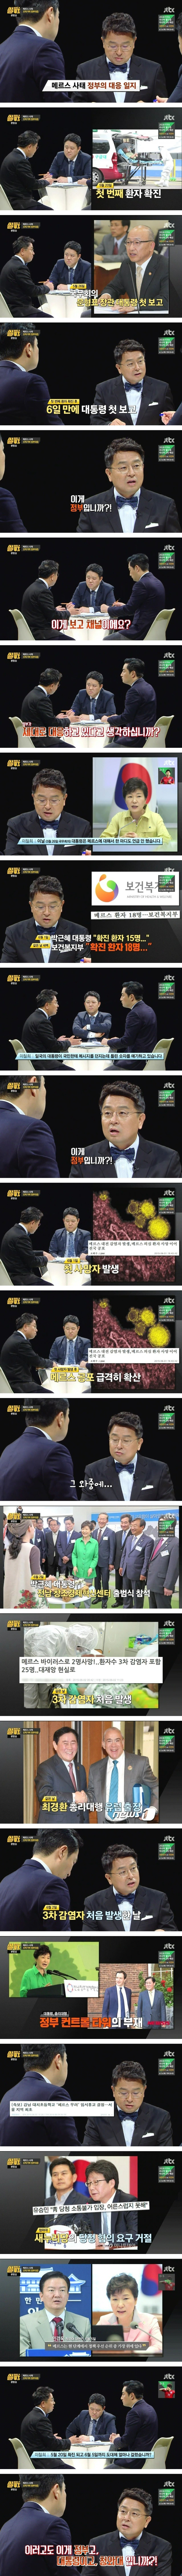 JTBC 썰전 / 메르스 사태 정부 대응 일지